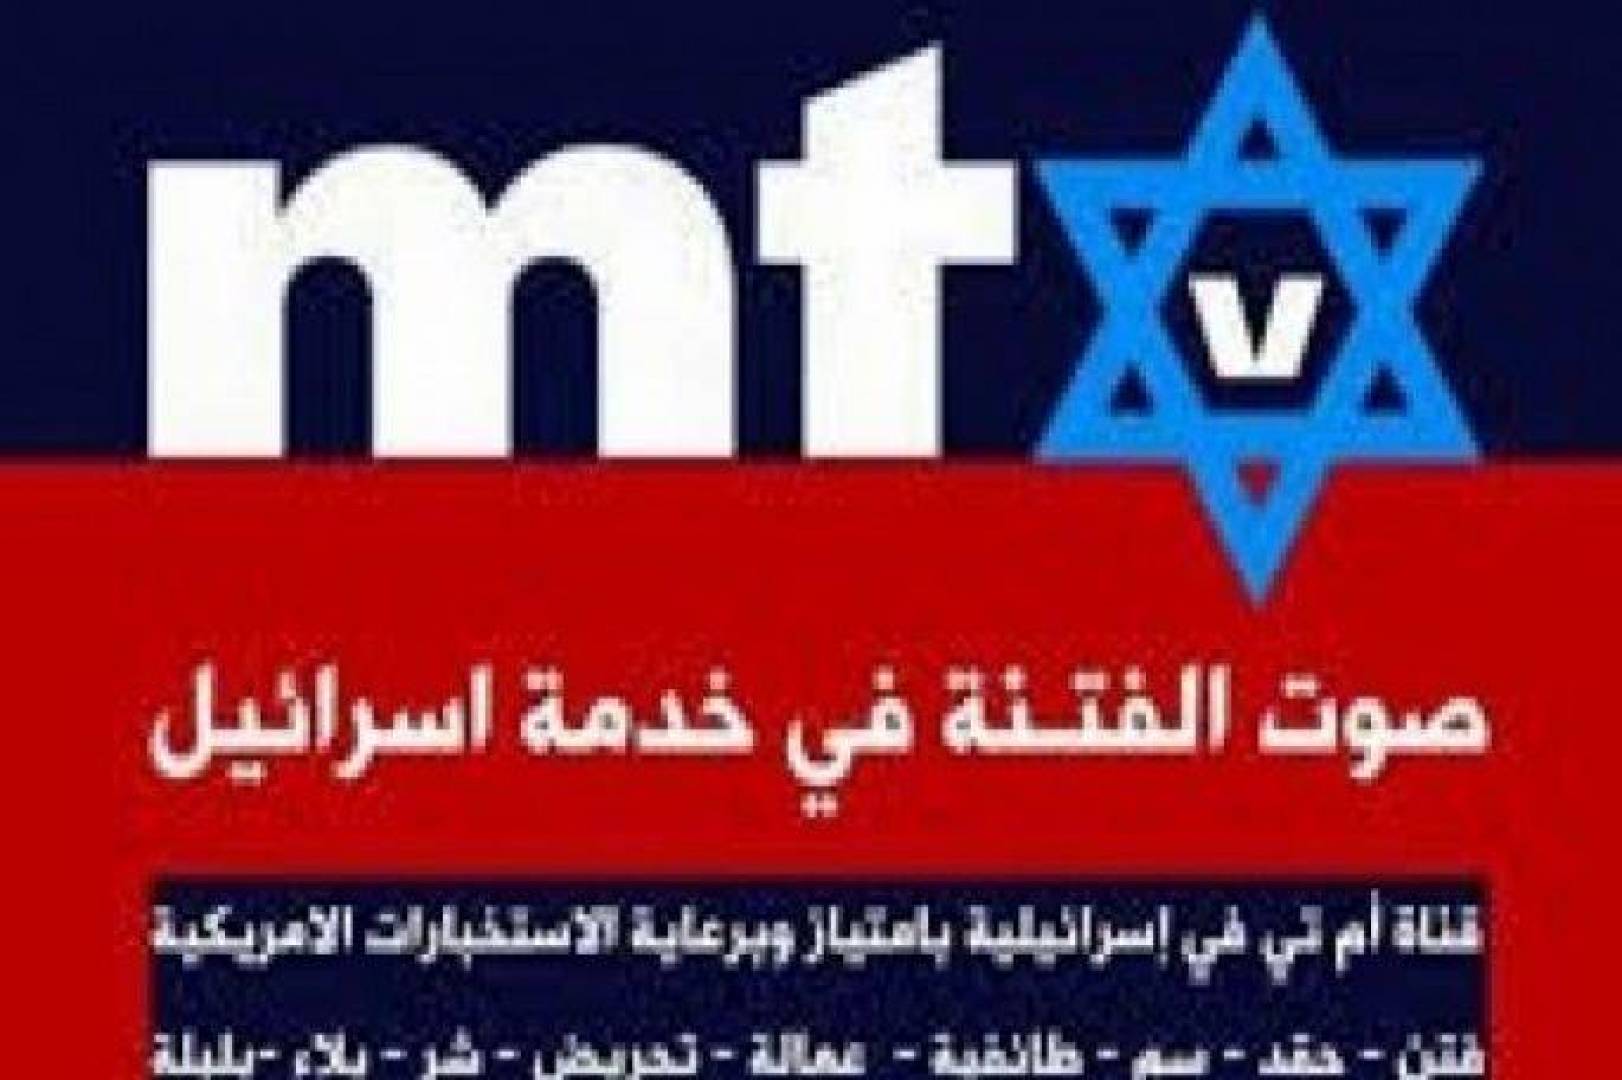 كتب السيِّد بلال وهبي: قناة الفتنة الصهيونية في لبنان, (mtv) تحذر المناطق المسيحية.